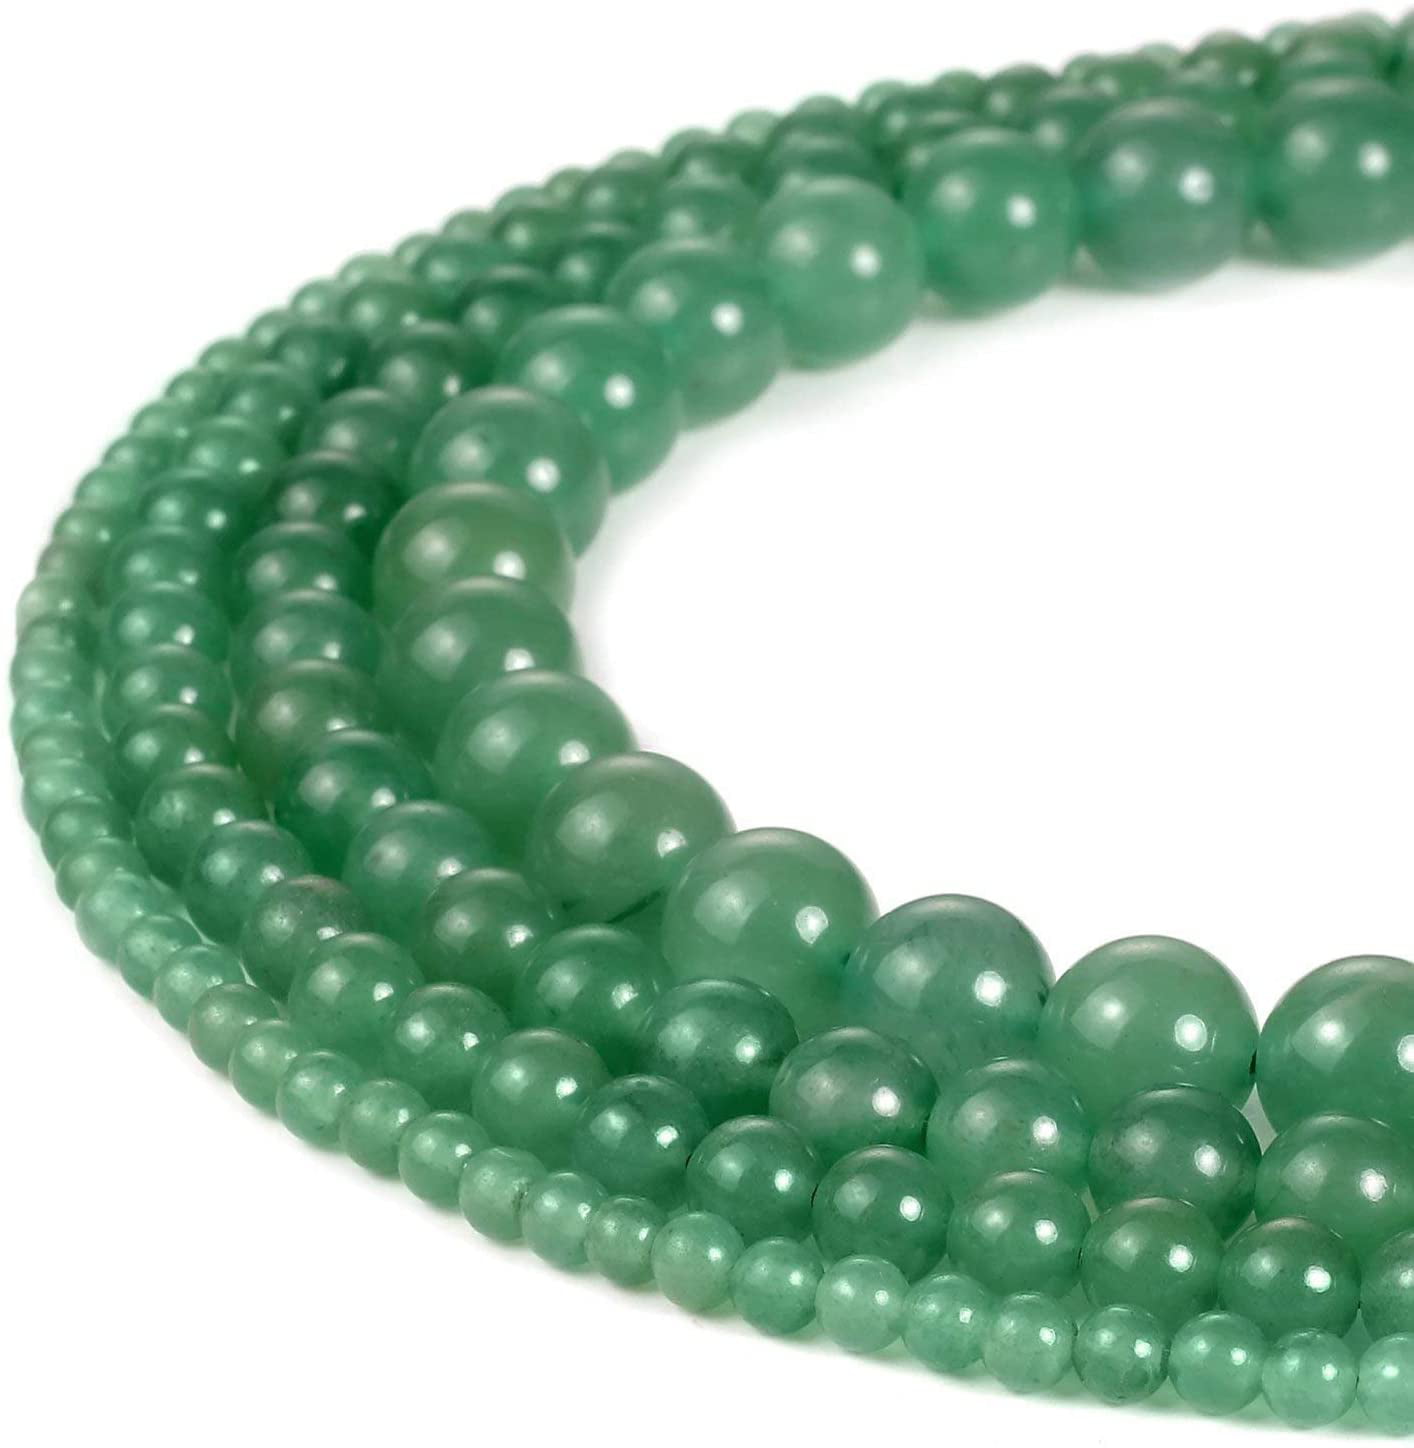 Blue Aventurine Jade Gemstone Round Beads For Jewelry Making Strand 15" 8mm 10mm 